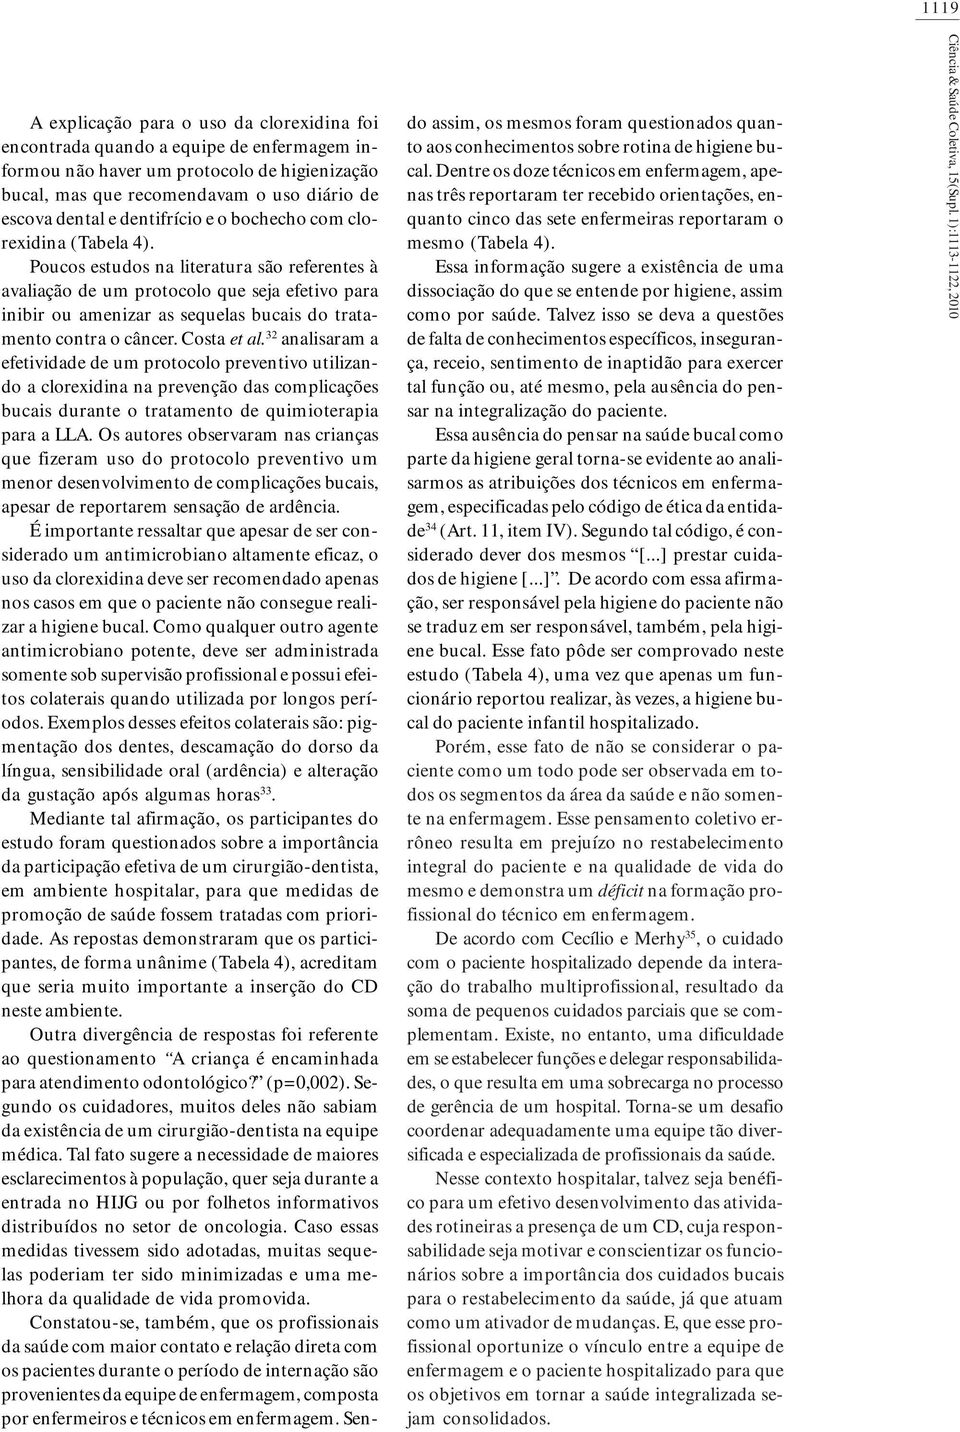 Costa et al. 32 aalisaram a efetividade de um protocolo prevetivo utilizado a clorexidia a preveção das complicações bucais durate o tratameto de quimioterapia para a LLA.